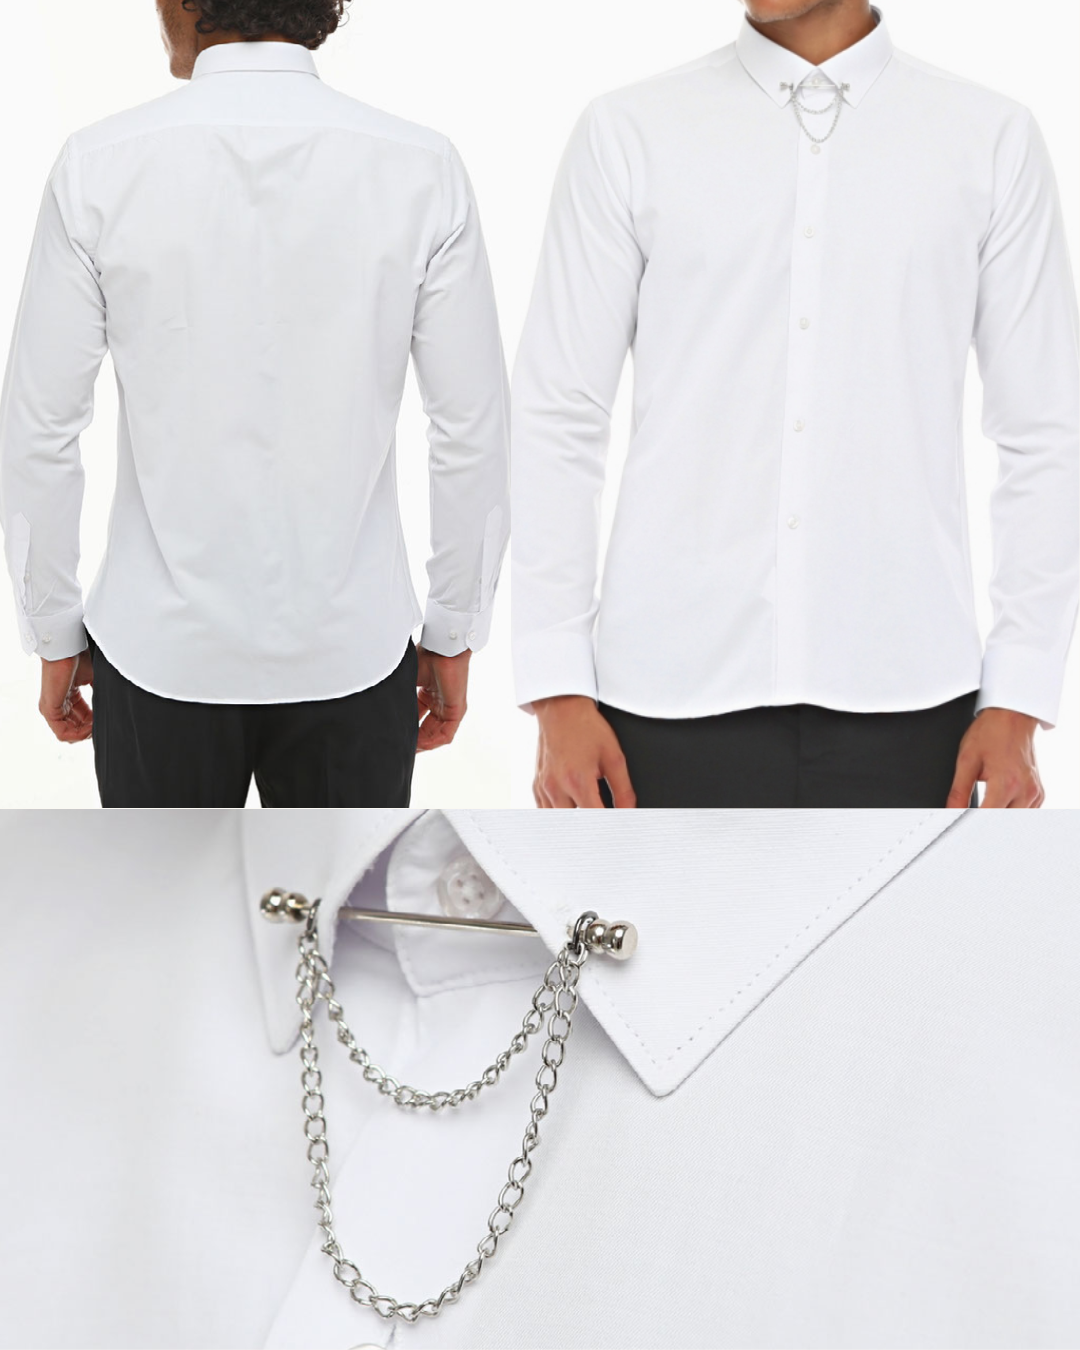 Weißes Hemd mit festgestecktem Kragen für Herren – leicht zu bügelnder Stoff